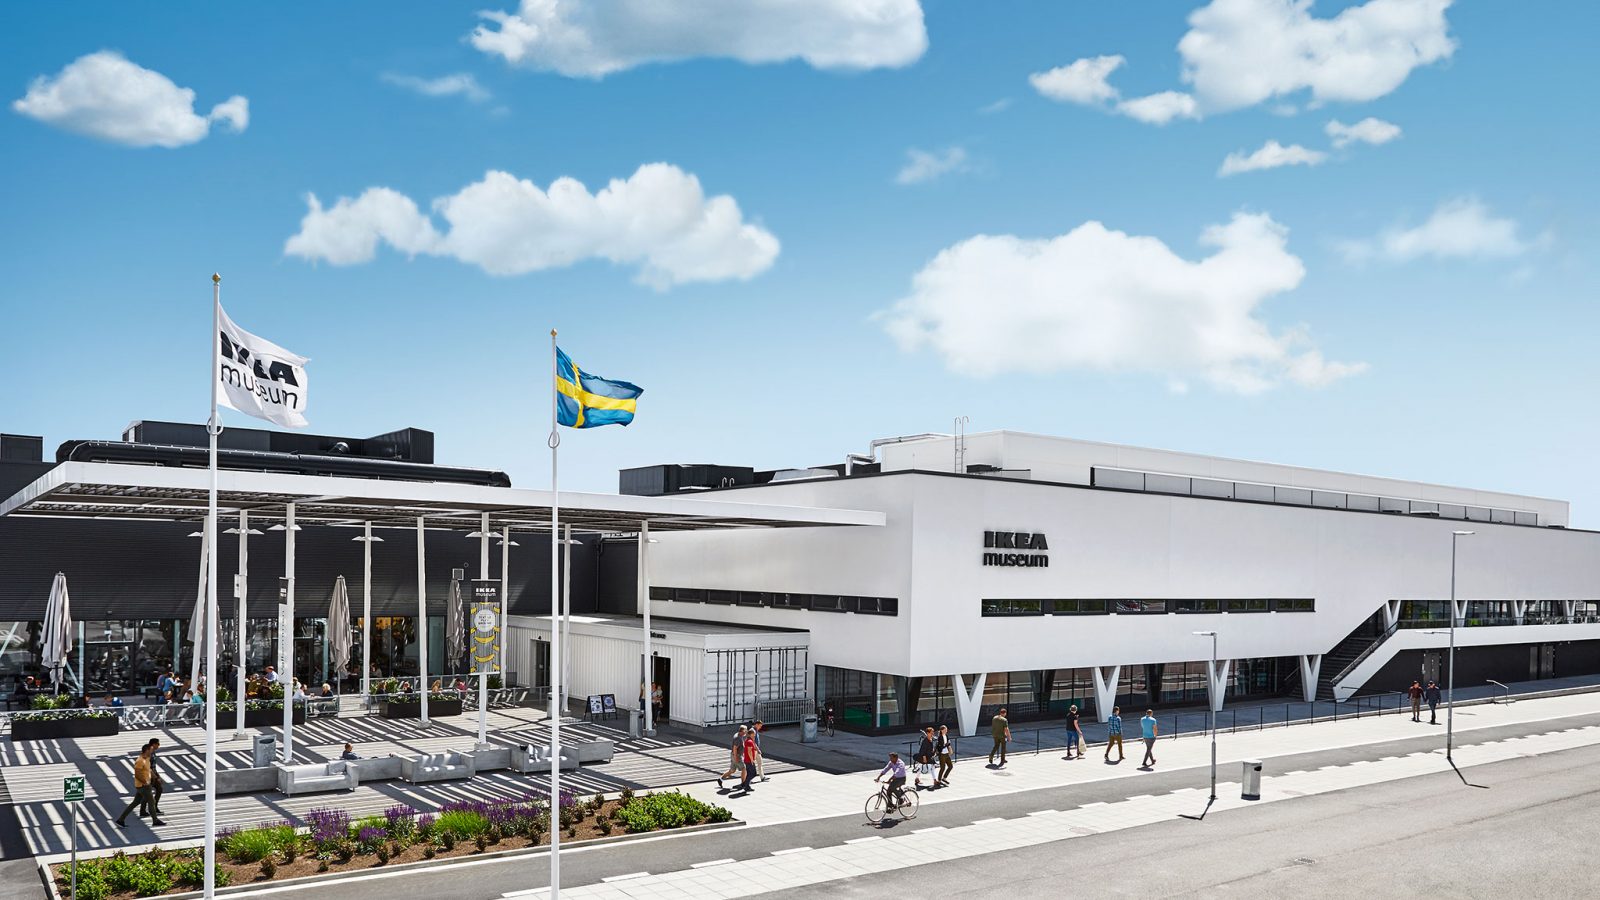 Das weiße Gebäude des IKEA Museums unter blauem Himmel, spazierende Menschen, eine IKEA Flagge neben einer schwedischen Flagge an einem windigen, sonnigen Tag.